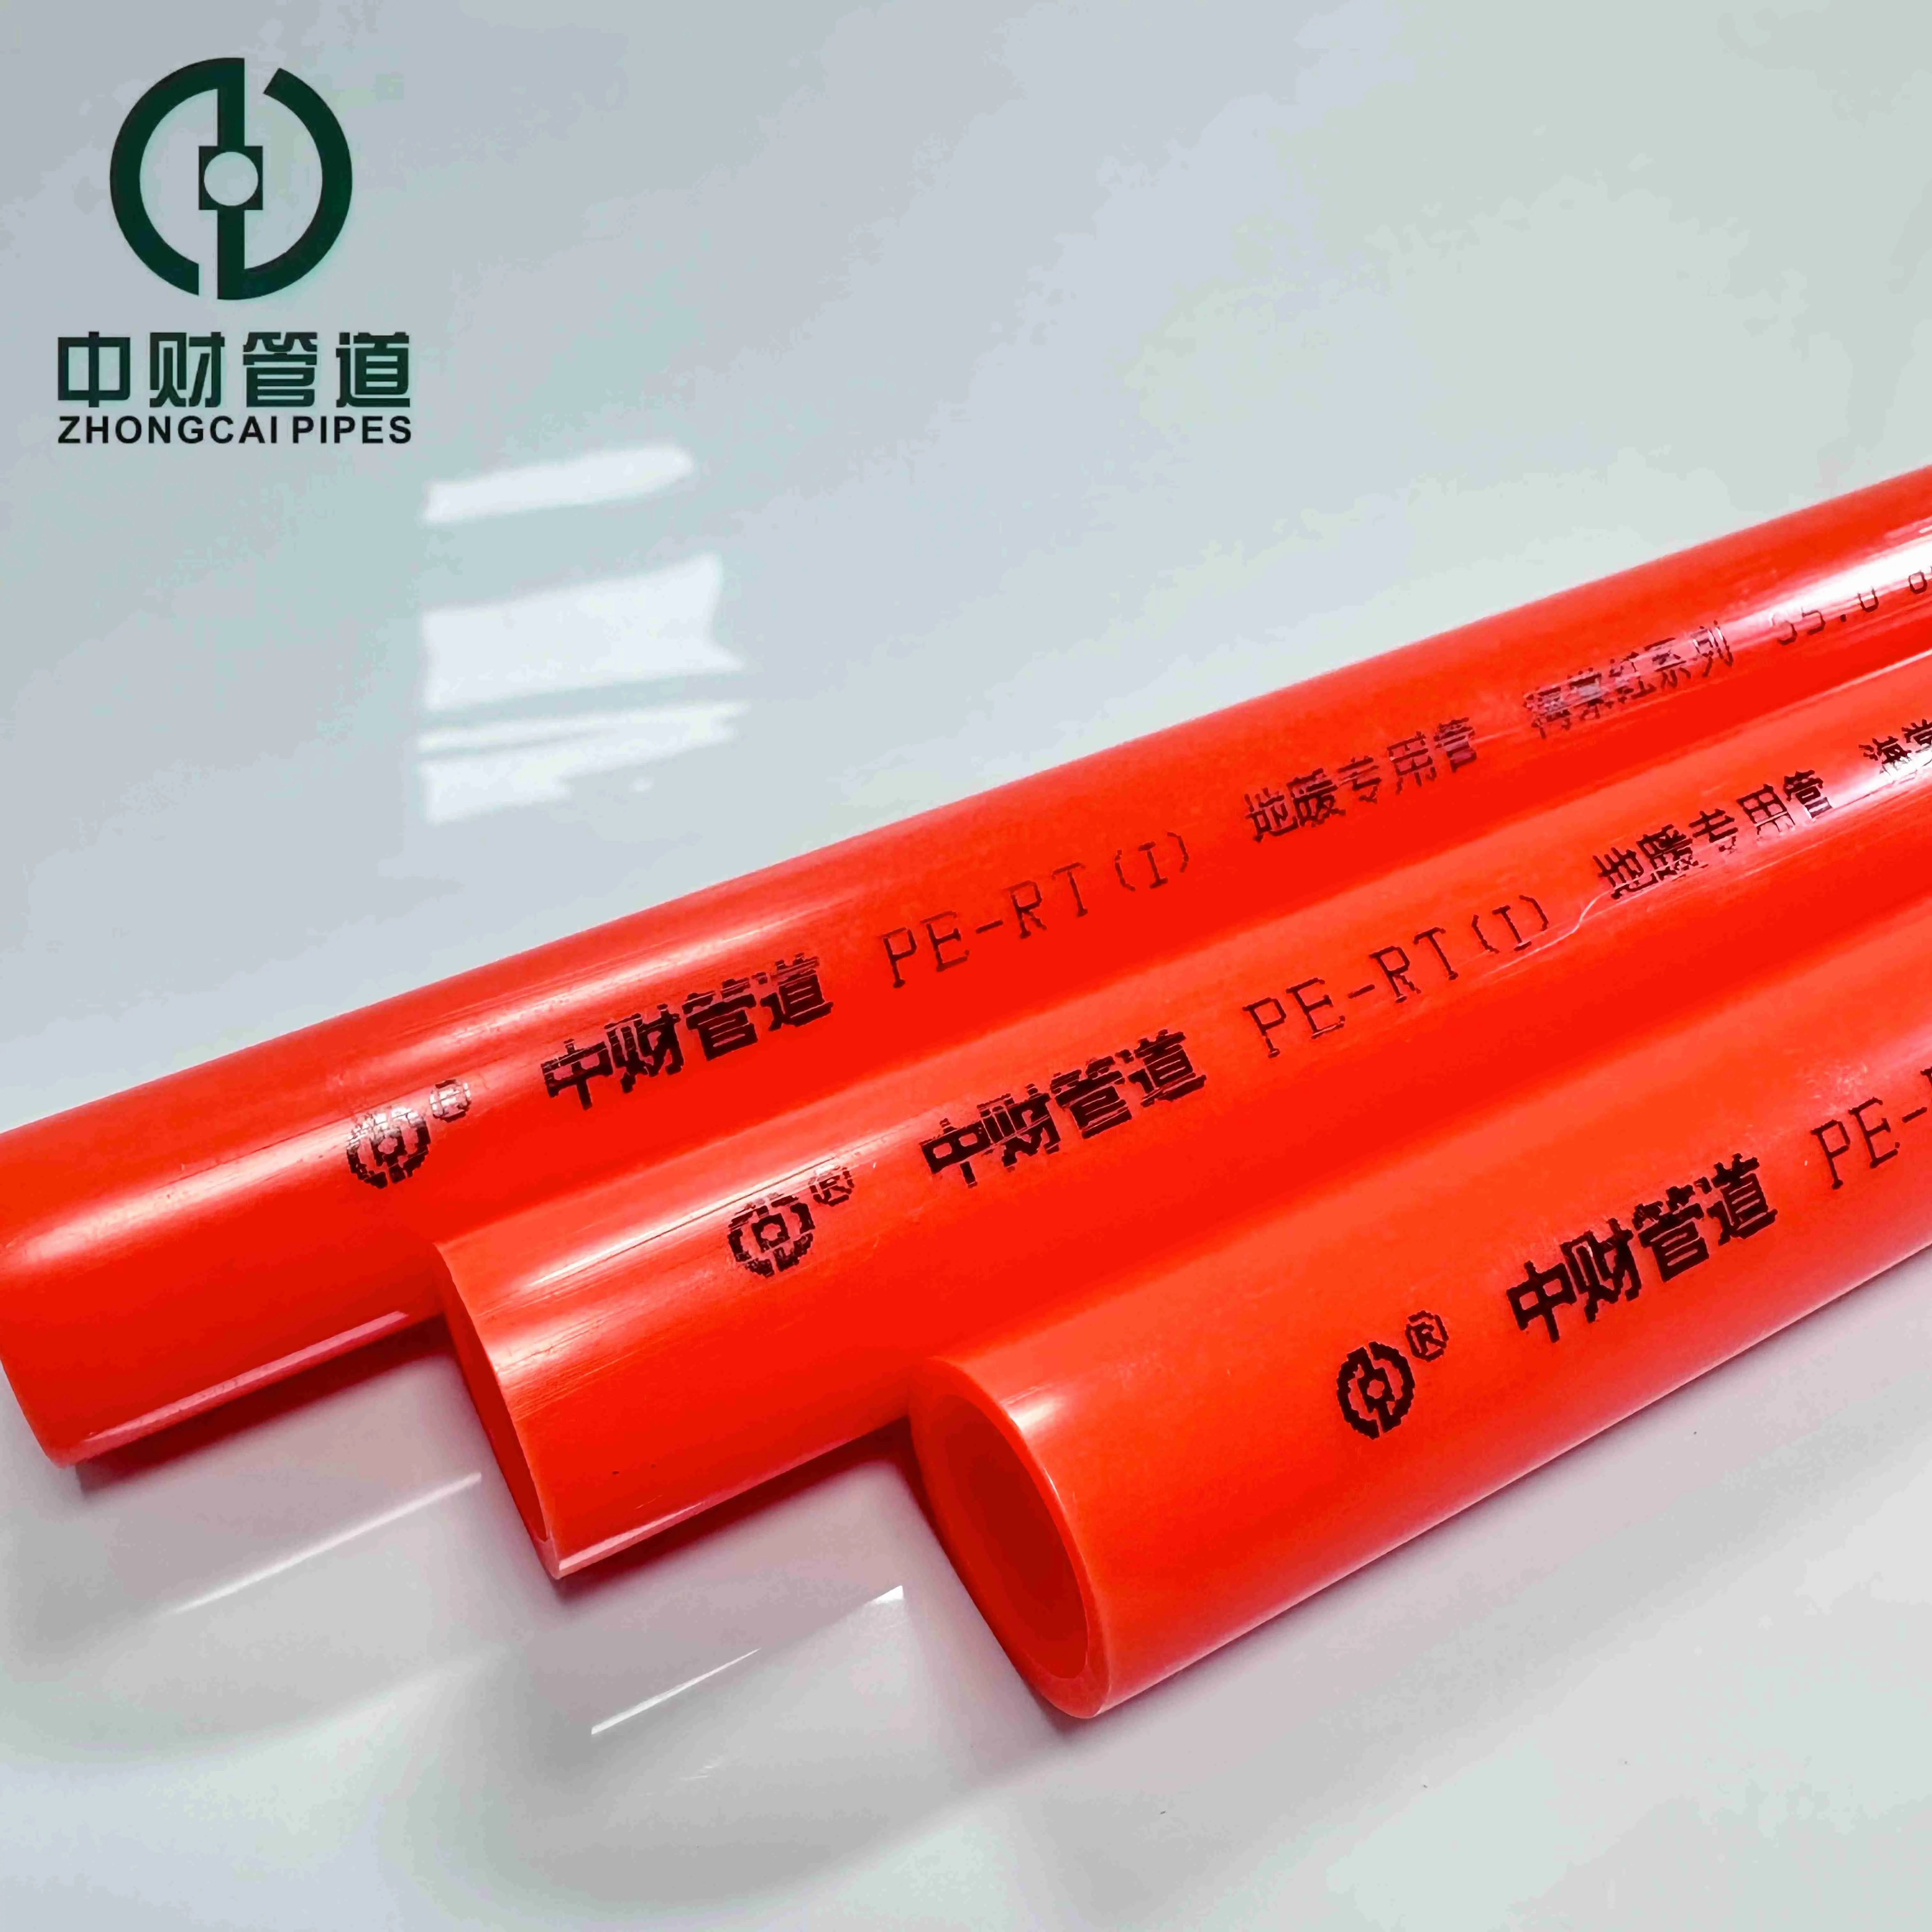 Tubi Zhongcai PE-RT speciali tubi in polietilene resistente al calore per riscaldamento a pavimento serie rosso spessori di diverse pareti